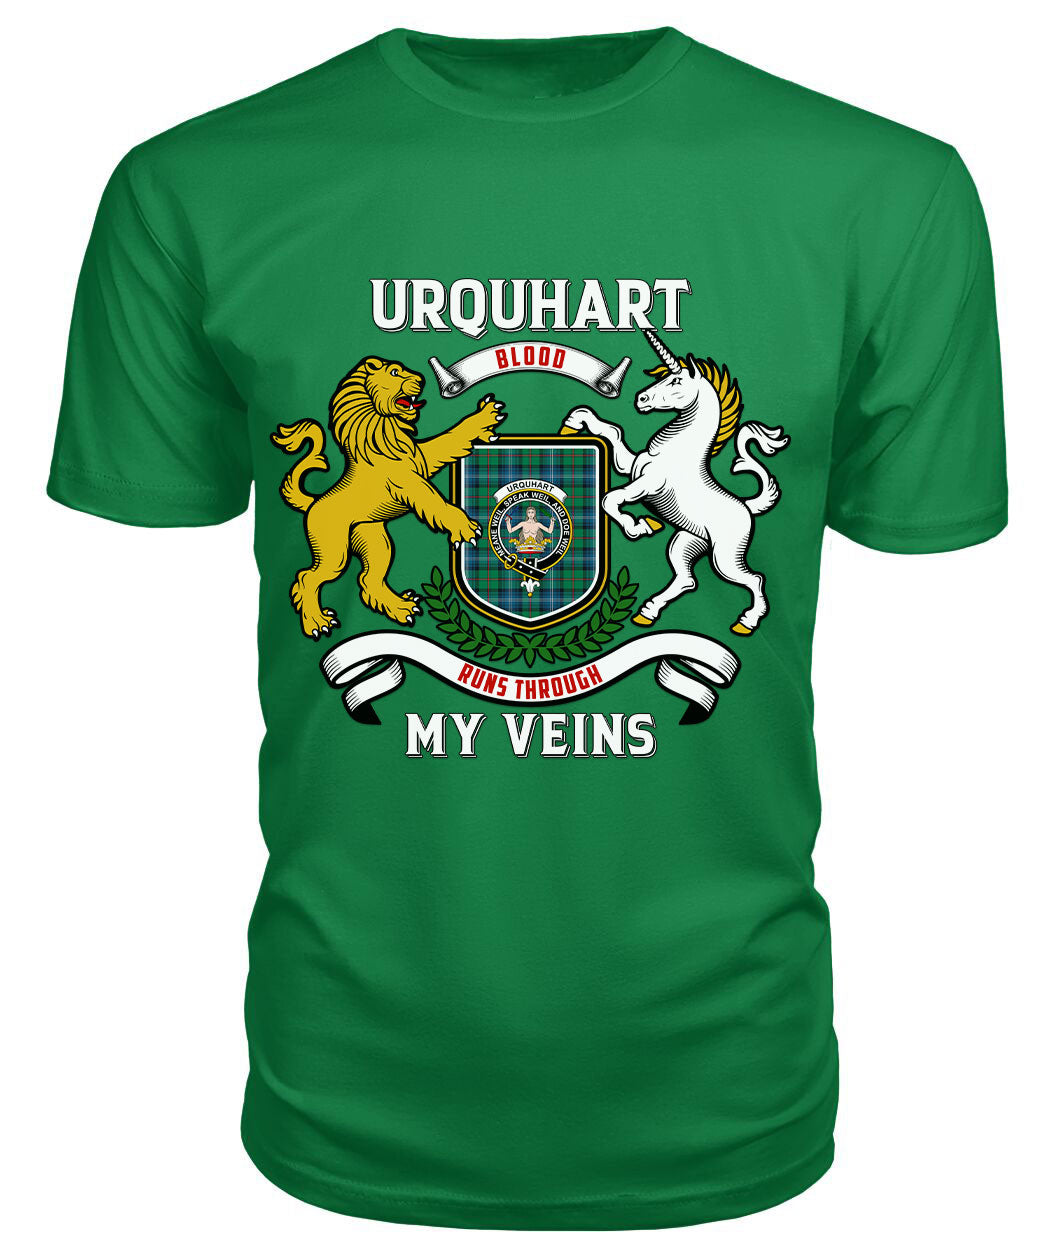 Urquhart Ancient Tartan Crest 2D T-shirt - Blood Runs Through My Veins Style